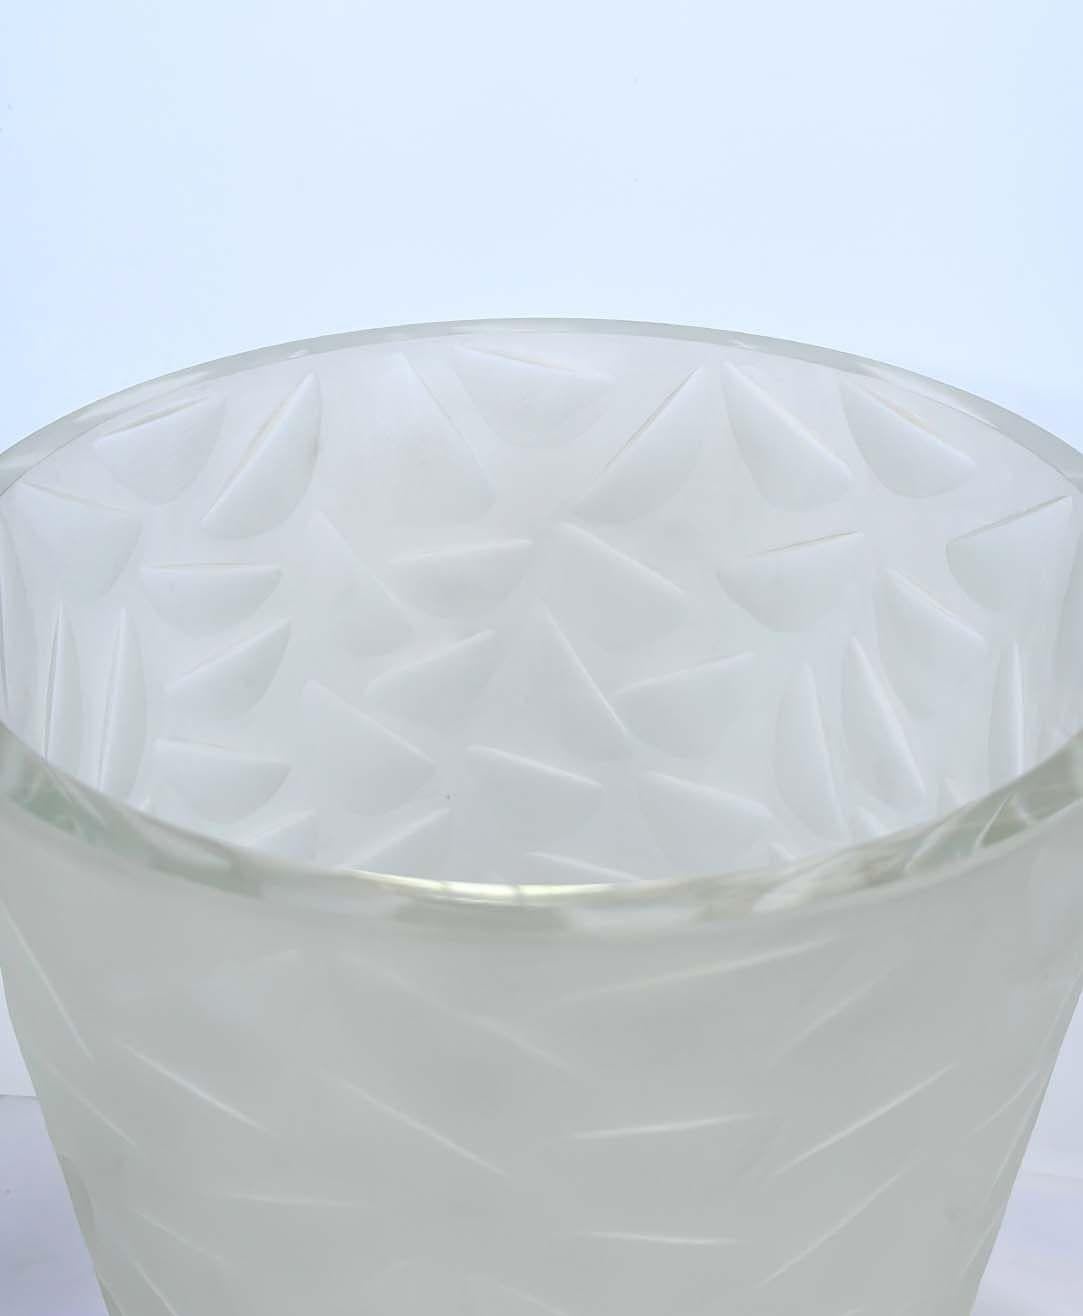 Seau à glace vintage en verre de Murano avec un design géométrique en relief sur tout le pourtour par Salviati. Fabriqué en Italie pour la collection 